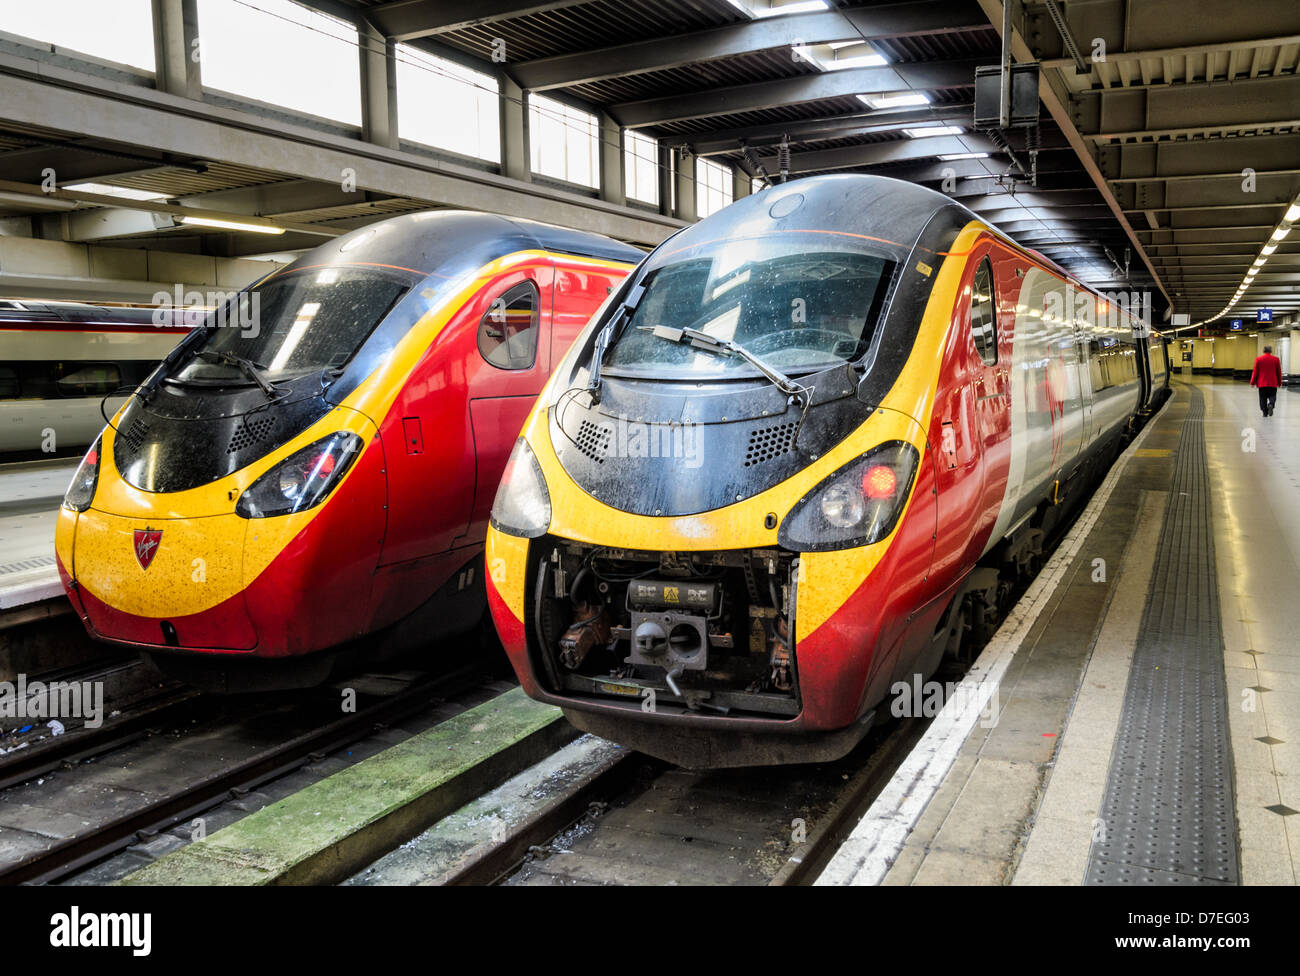 Pendolino-Züge von Virgin Trains betrieben warten an der Euston Station, London, England. Einer scheint Wartungsarbeiten durchgeführt werden. Pendolino-Zug Stockfoto